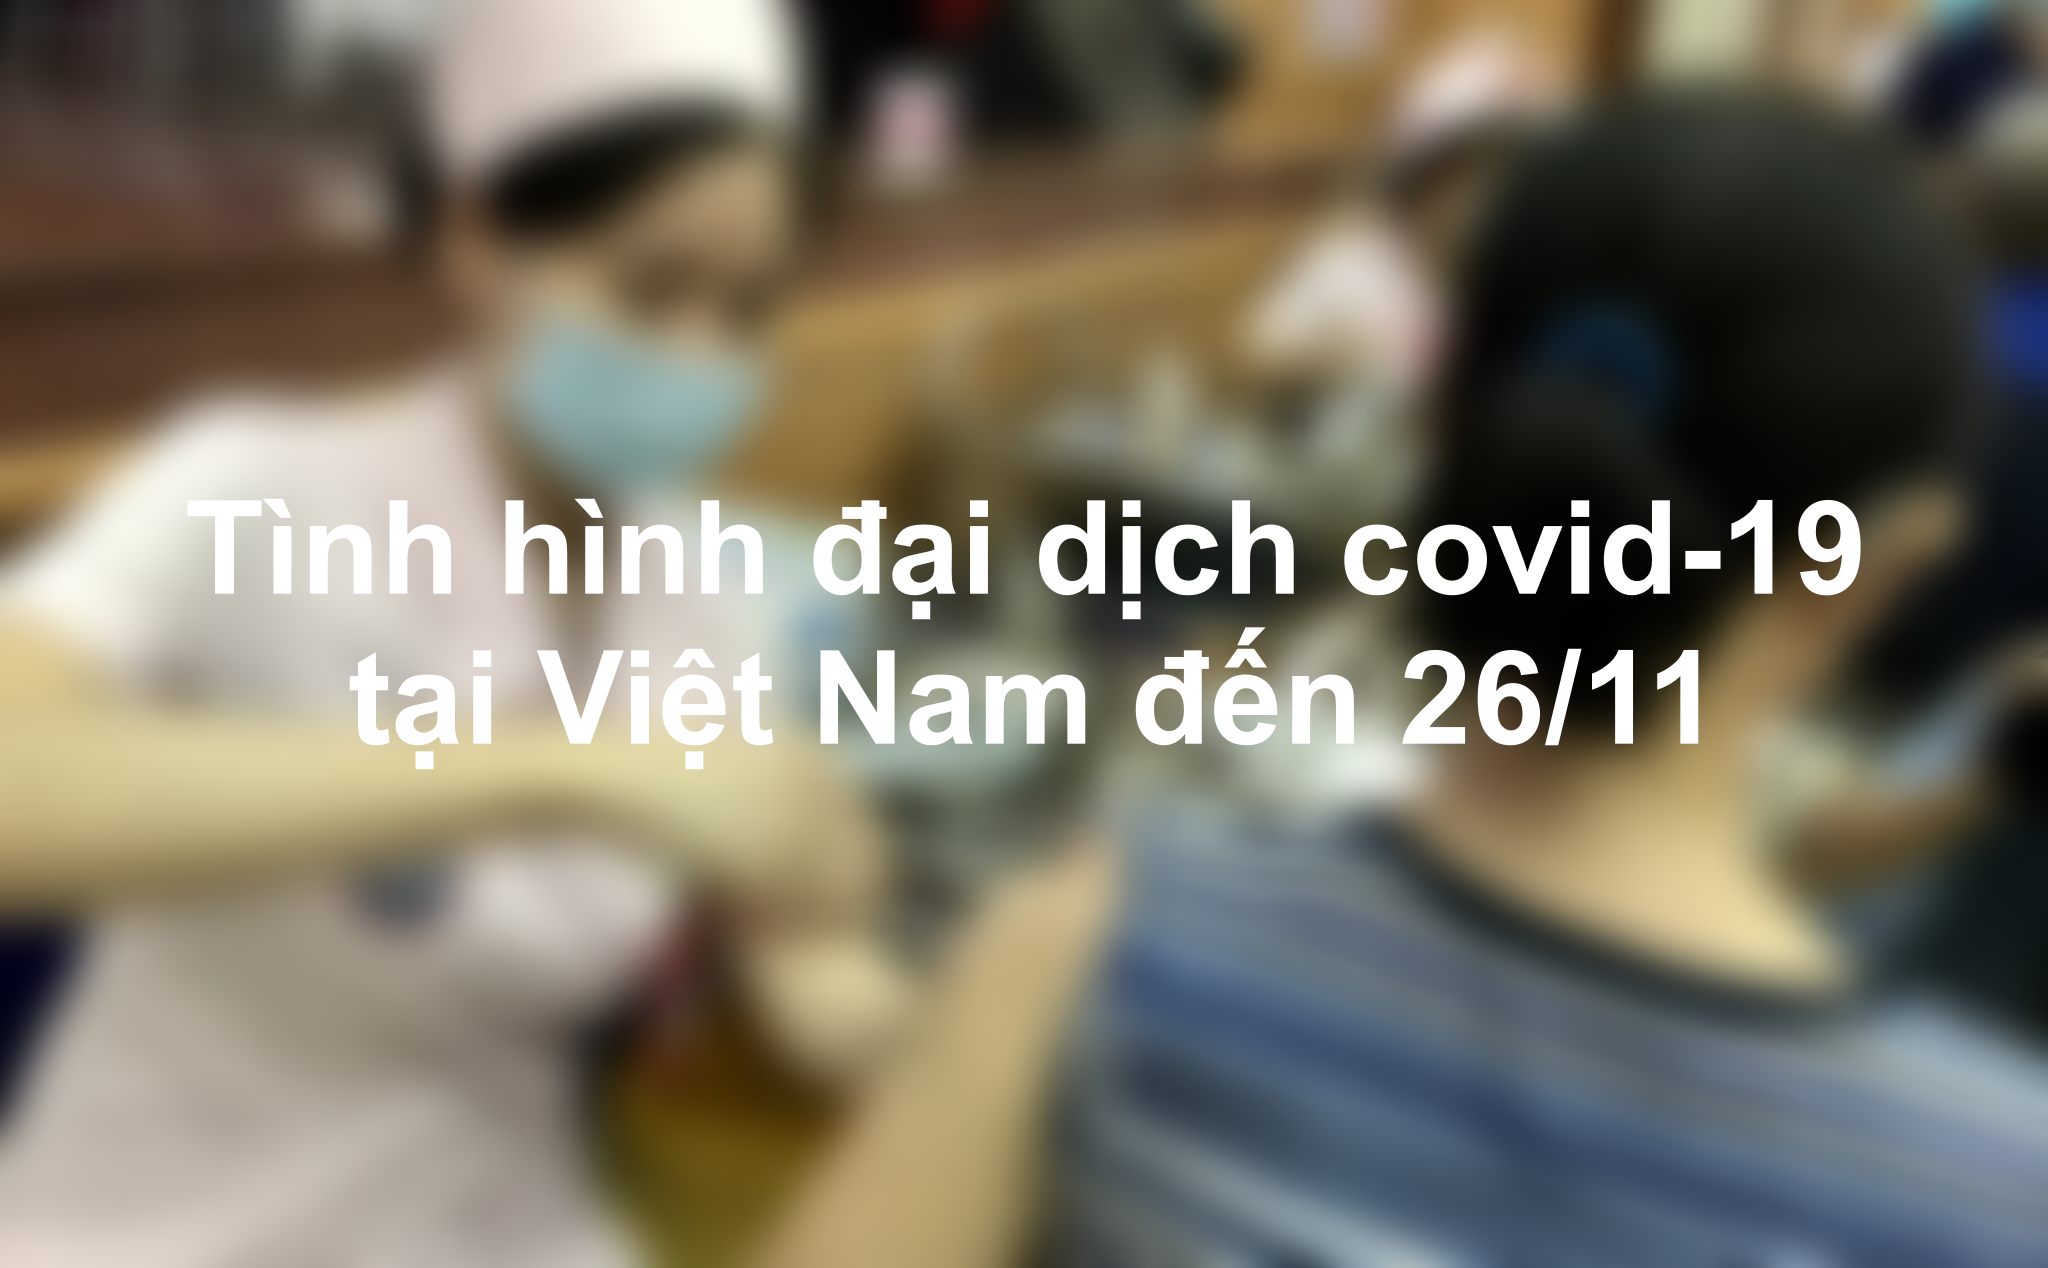 Tình hình dịch covid-19 tại Việt Nam đến 26/11